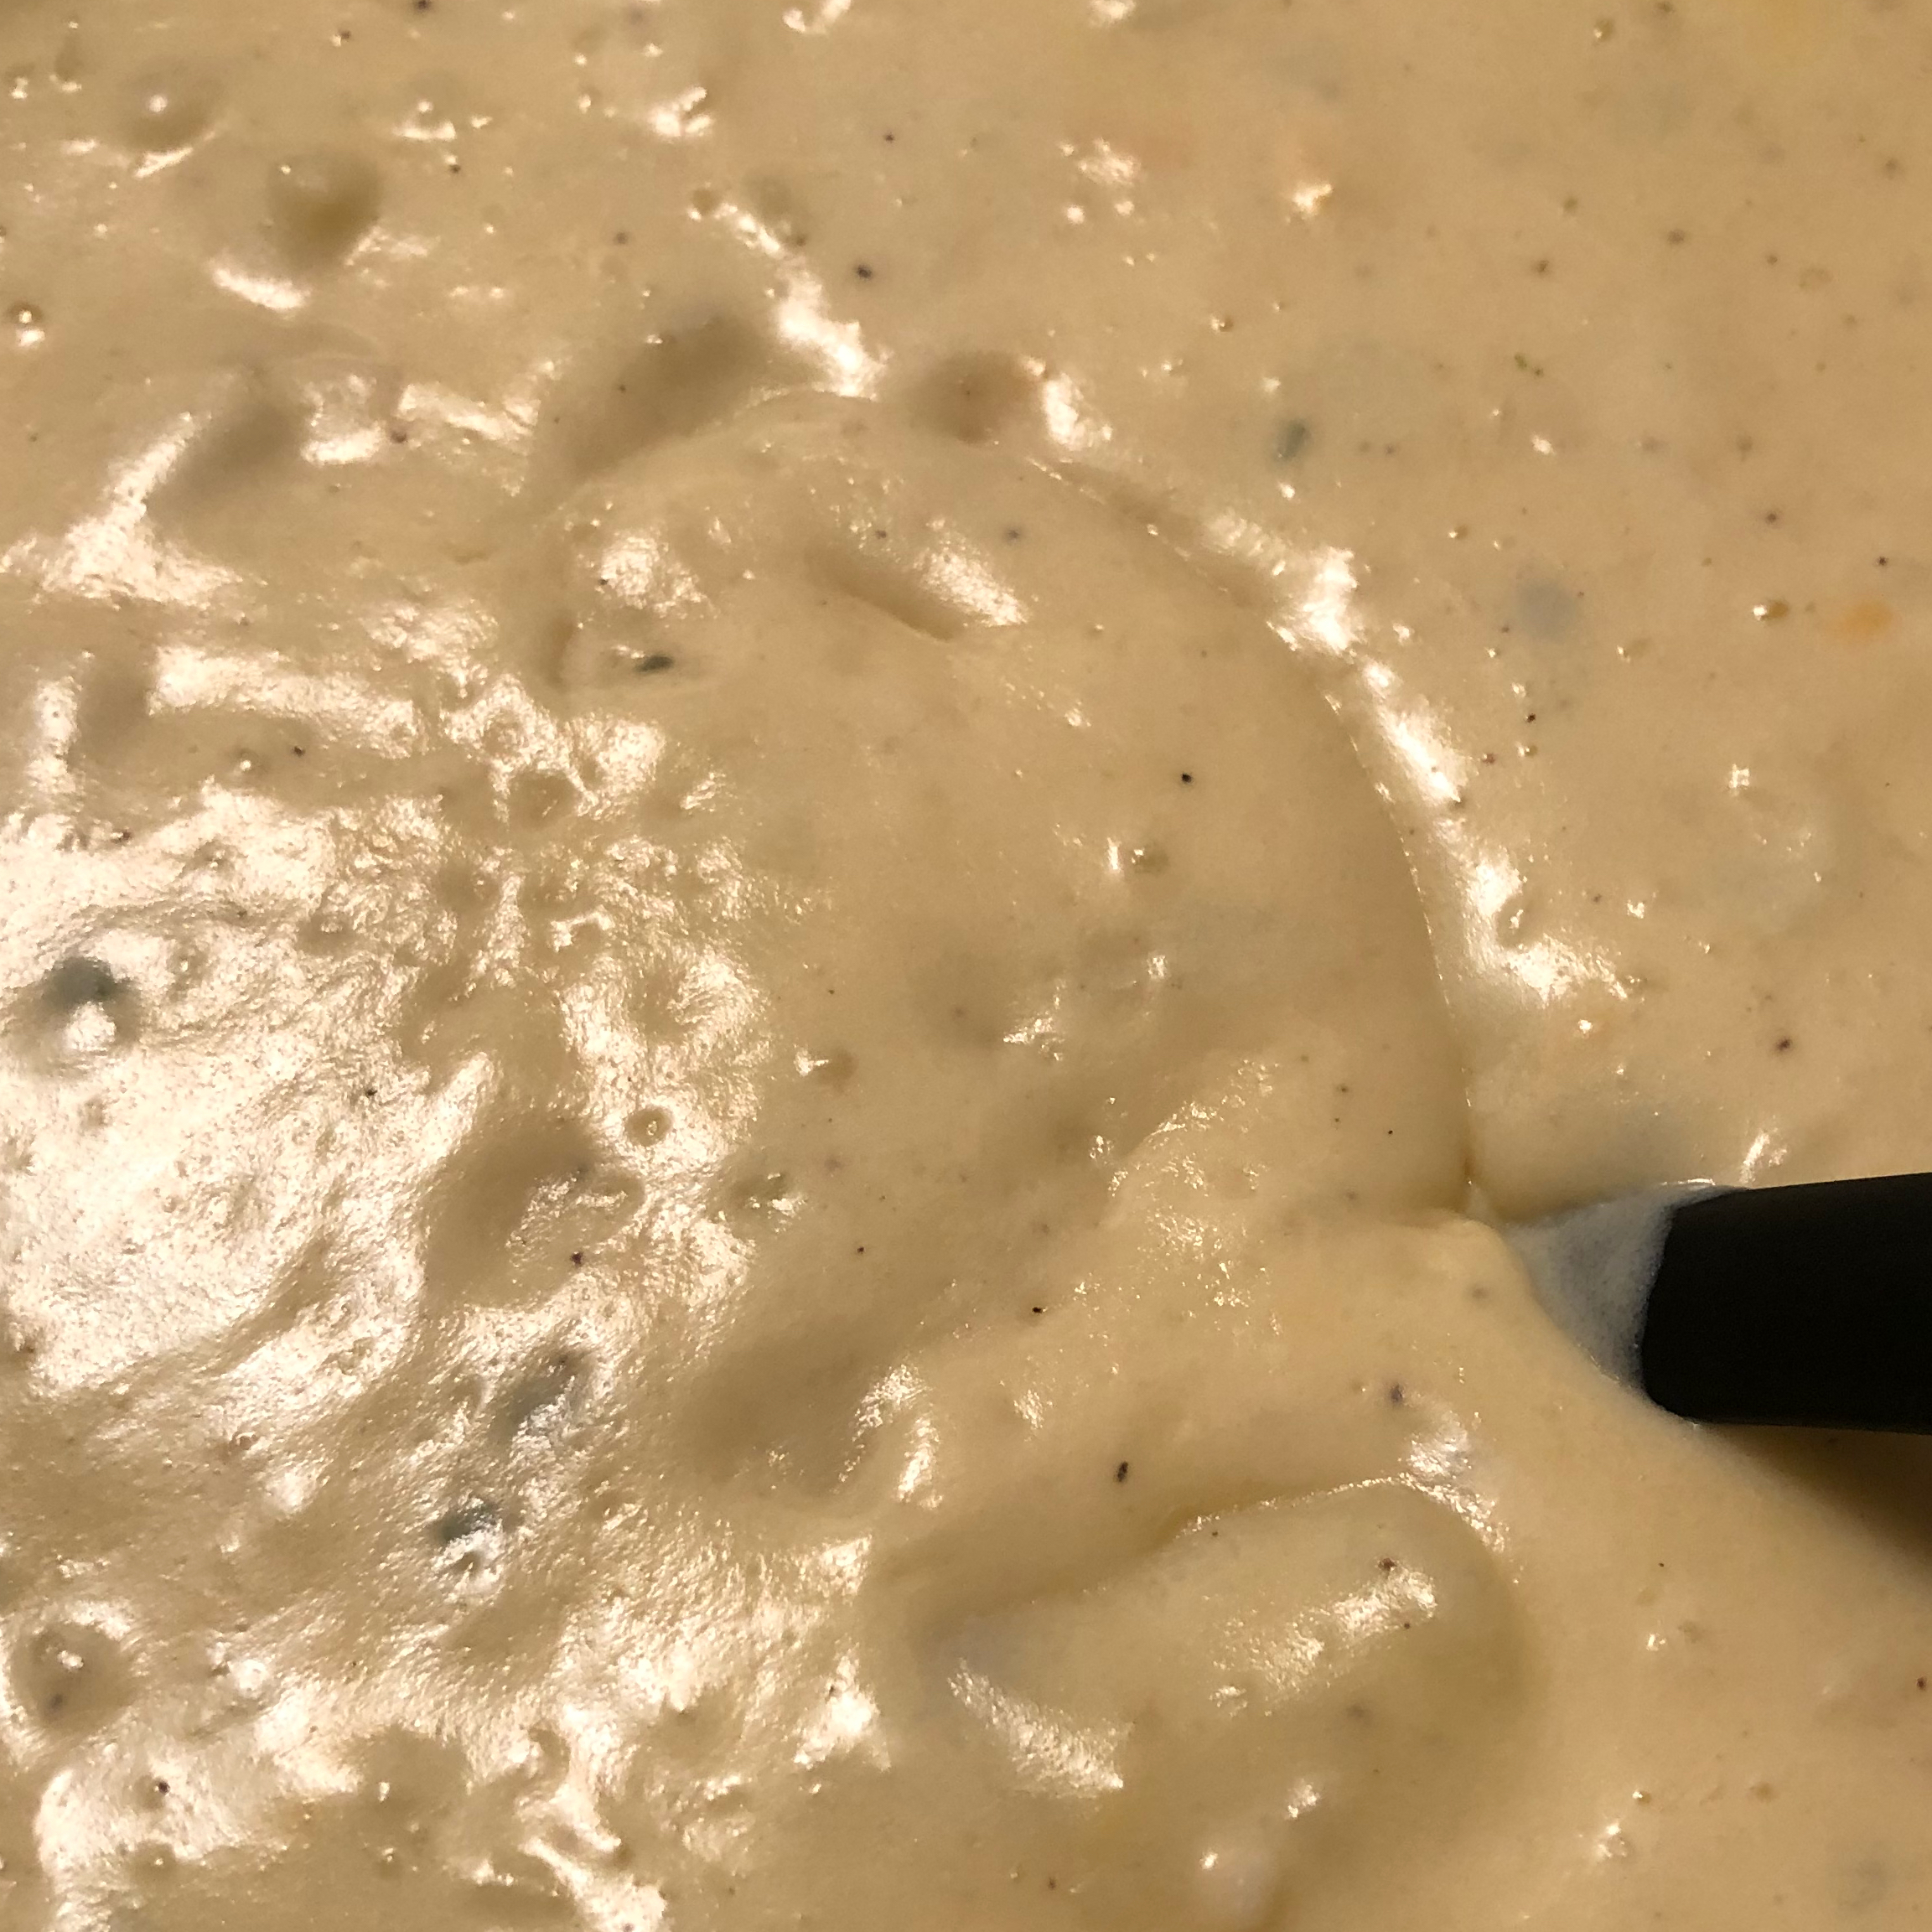 Baked Potato Soup V 